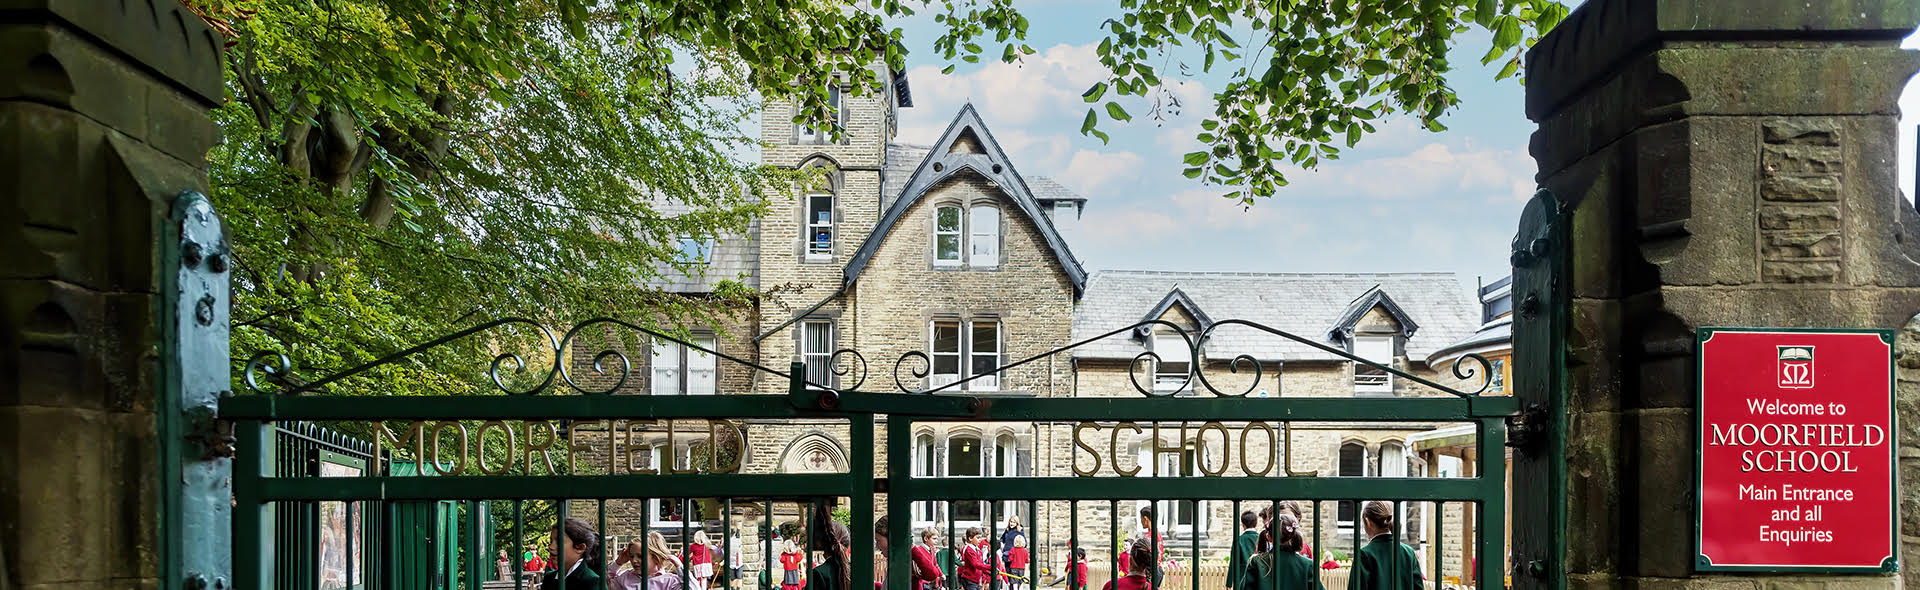 Moorfield School-Moorfiel School-Front of School